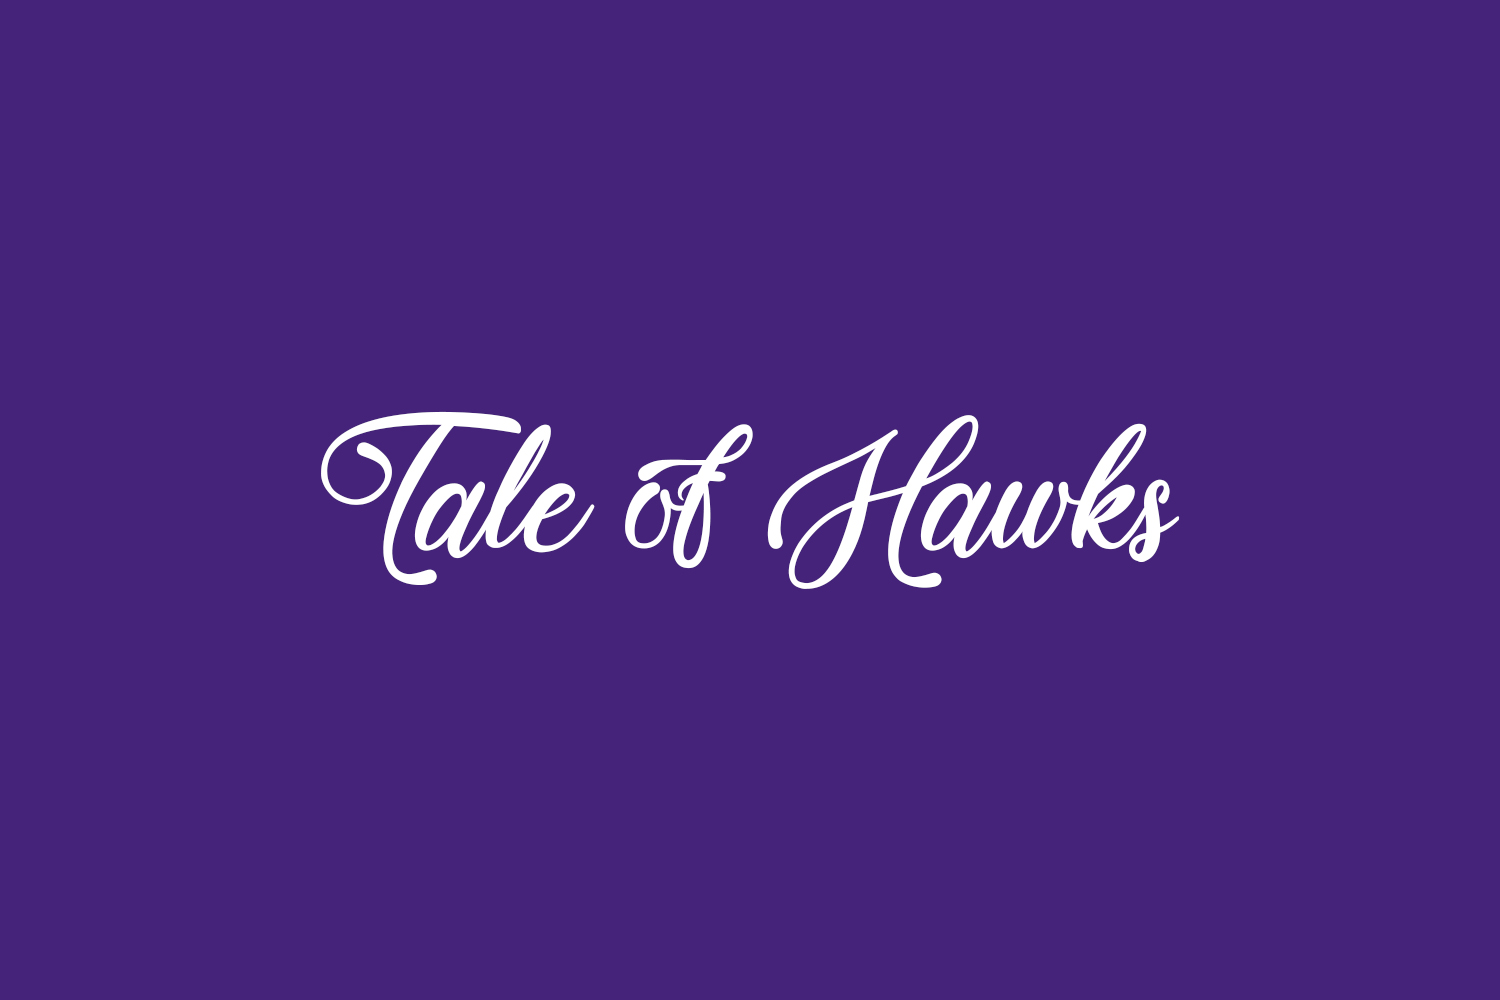 Tale of Hawks Free Font